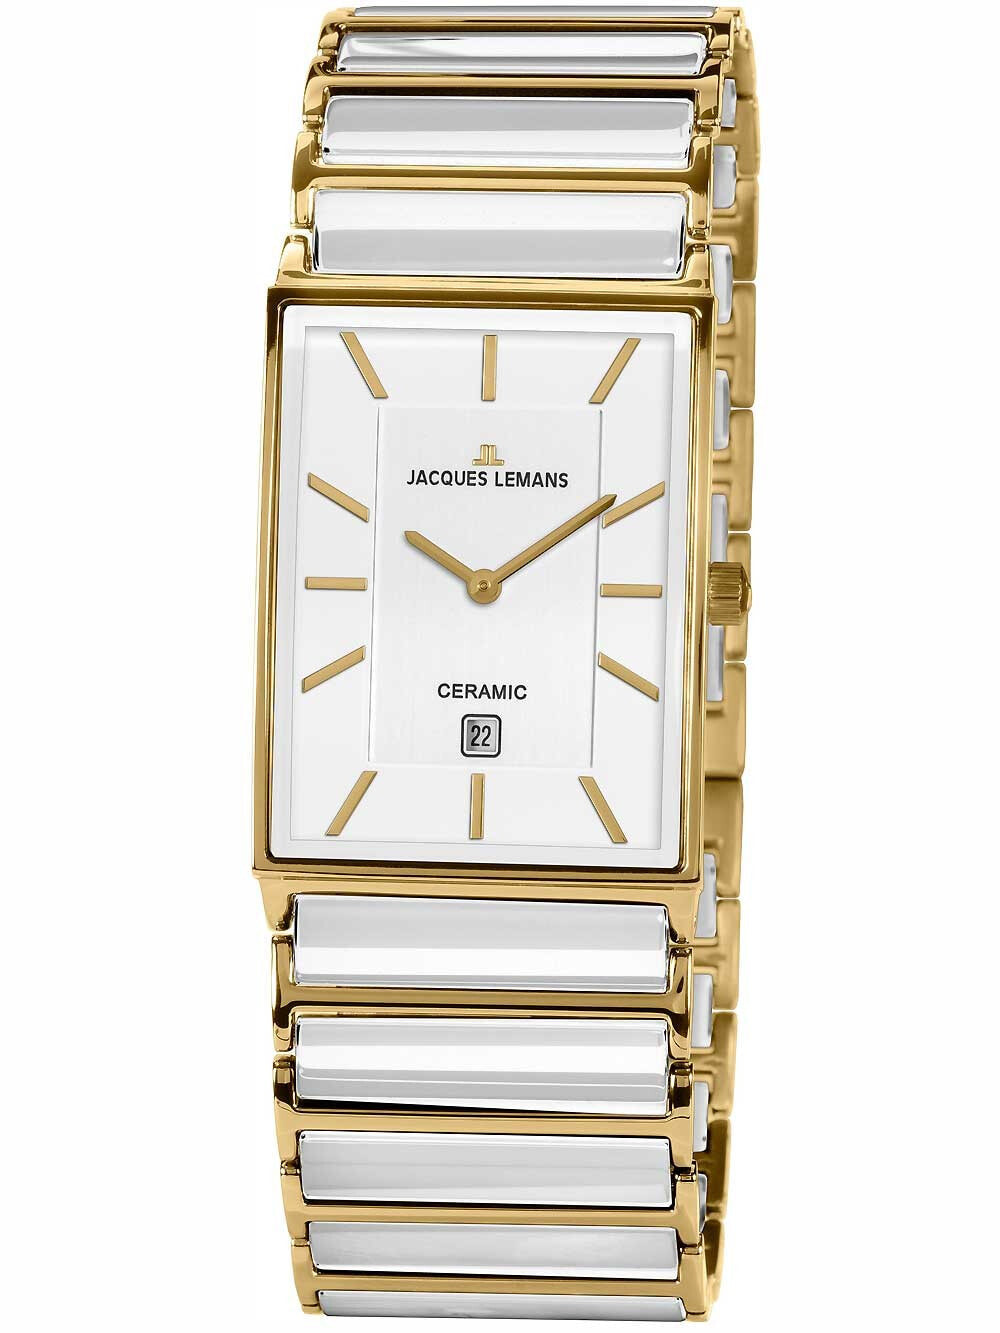 Женские наручные кварцевые часы Jacques Lemans из нержавеющей стали с PVD-покрытием из желтого золота,  установлено минеральное стекло с сапфировым напылением.  Браслет из высокотехнологичной керамики белого цвета дополнен надежной двойной застежкой  клип